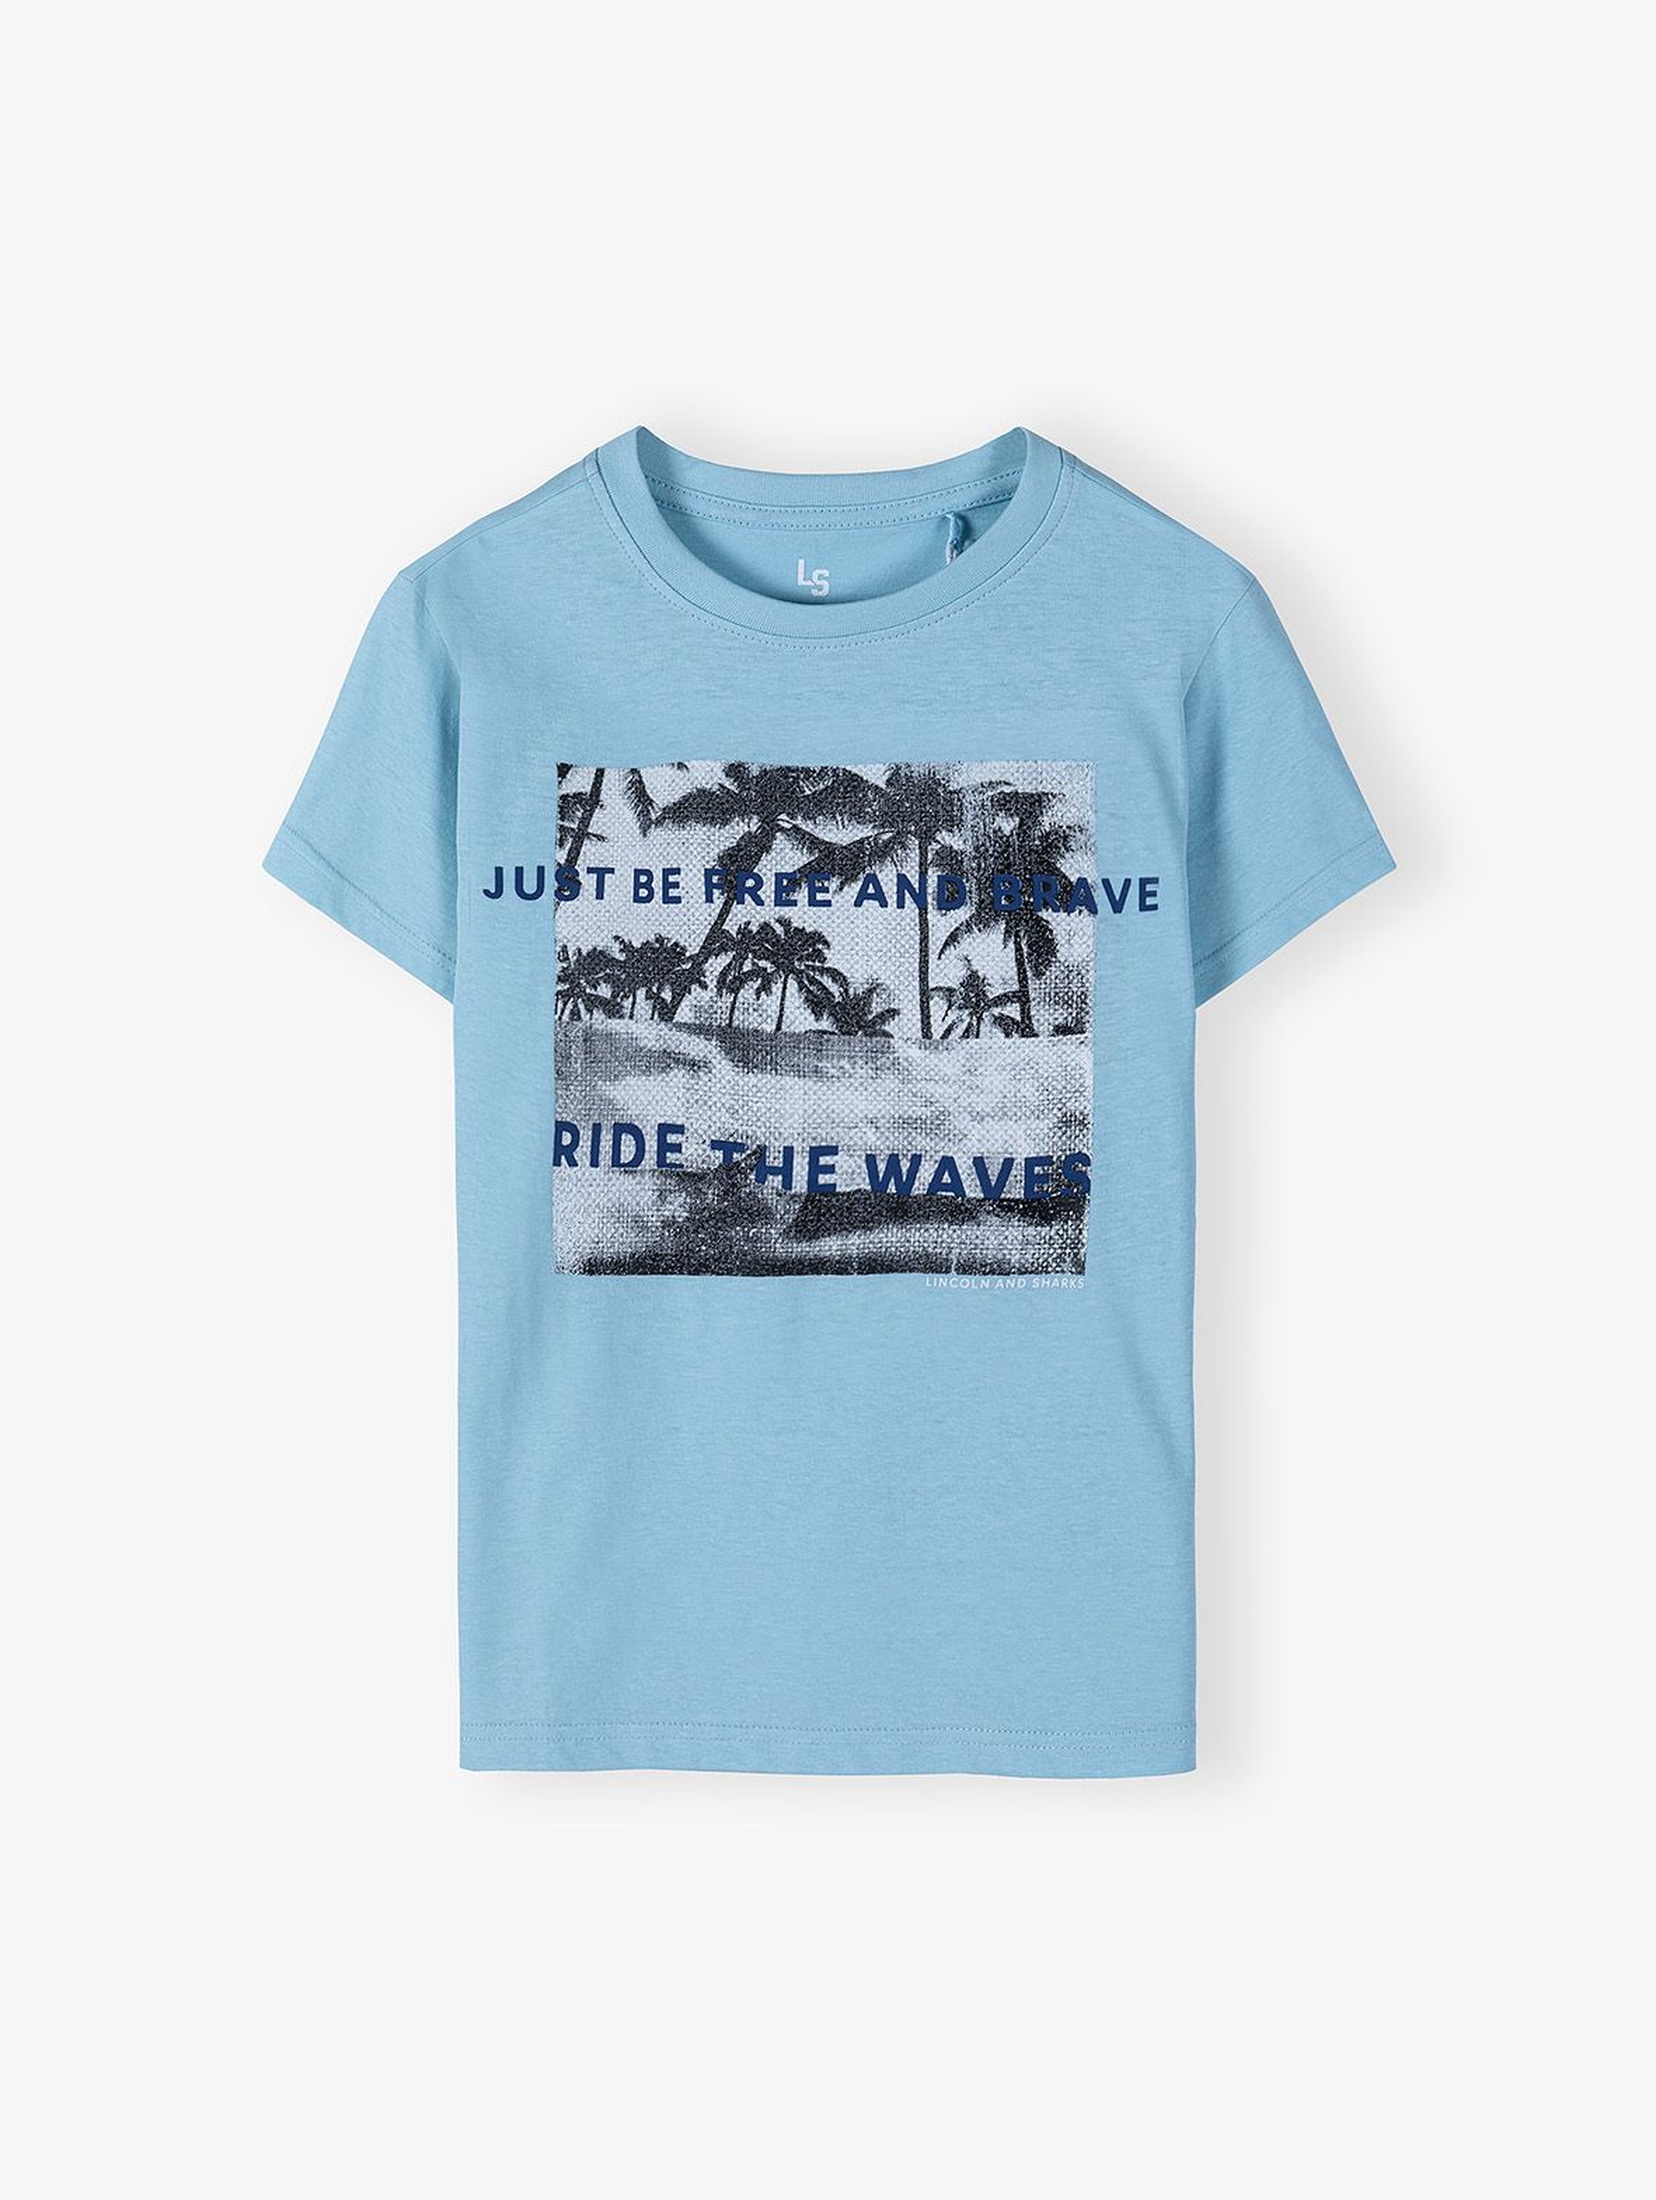 Bawełniany T-shirt dla chłopca - niebieski